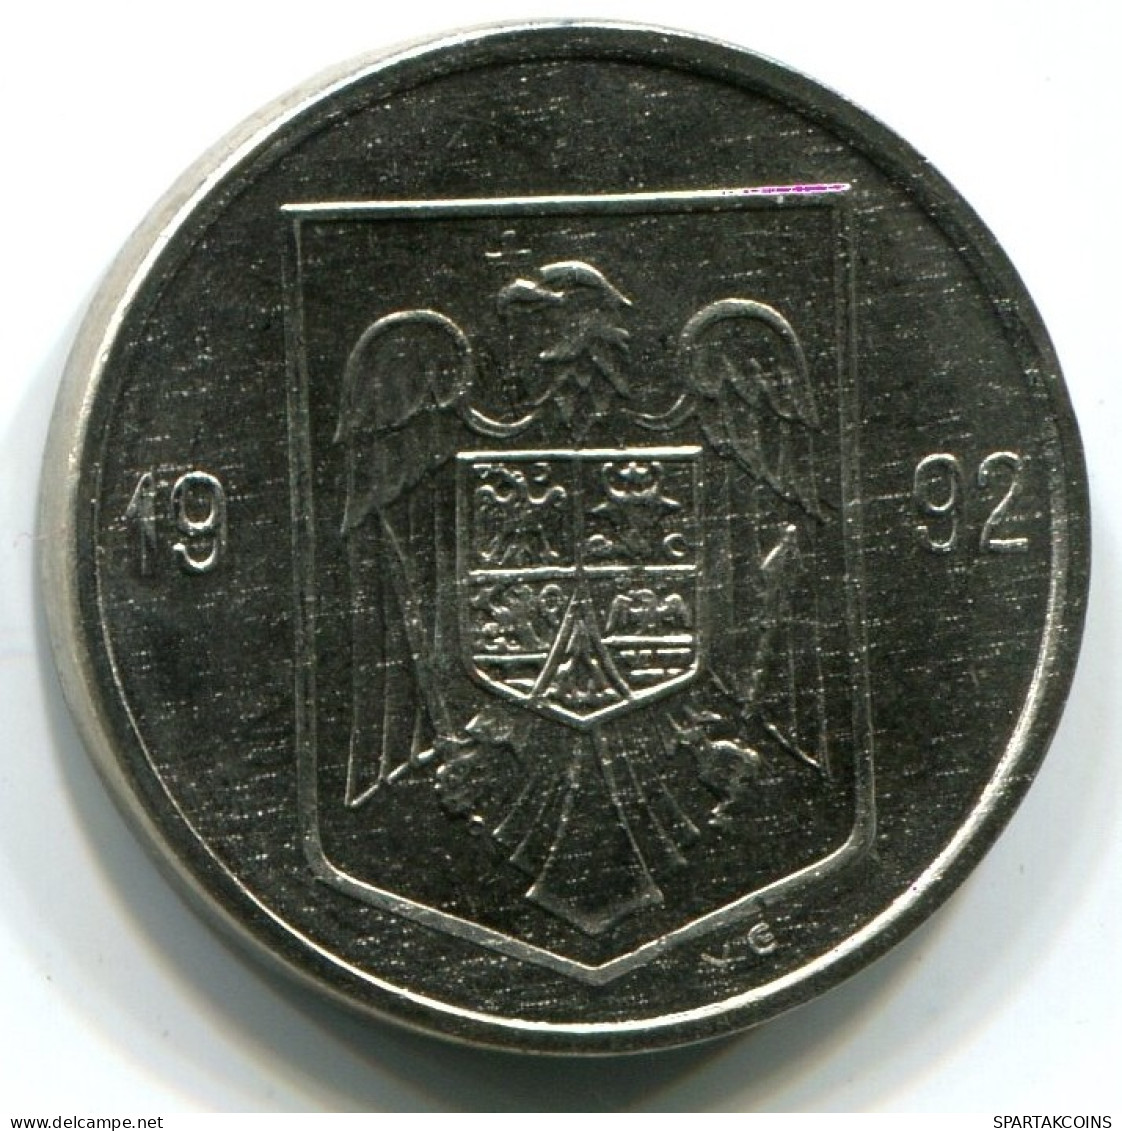 5 LEI 1992 ROMÁN OMANIA UNC Eagle Coat Of Arms V.G Mark Moneda #W11330.E.A - Romania